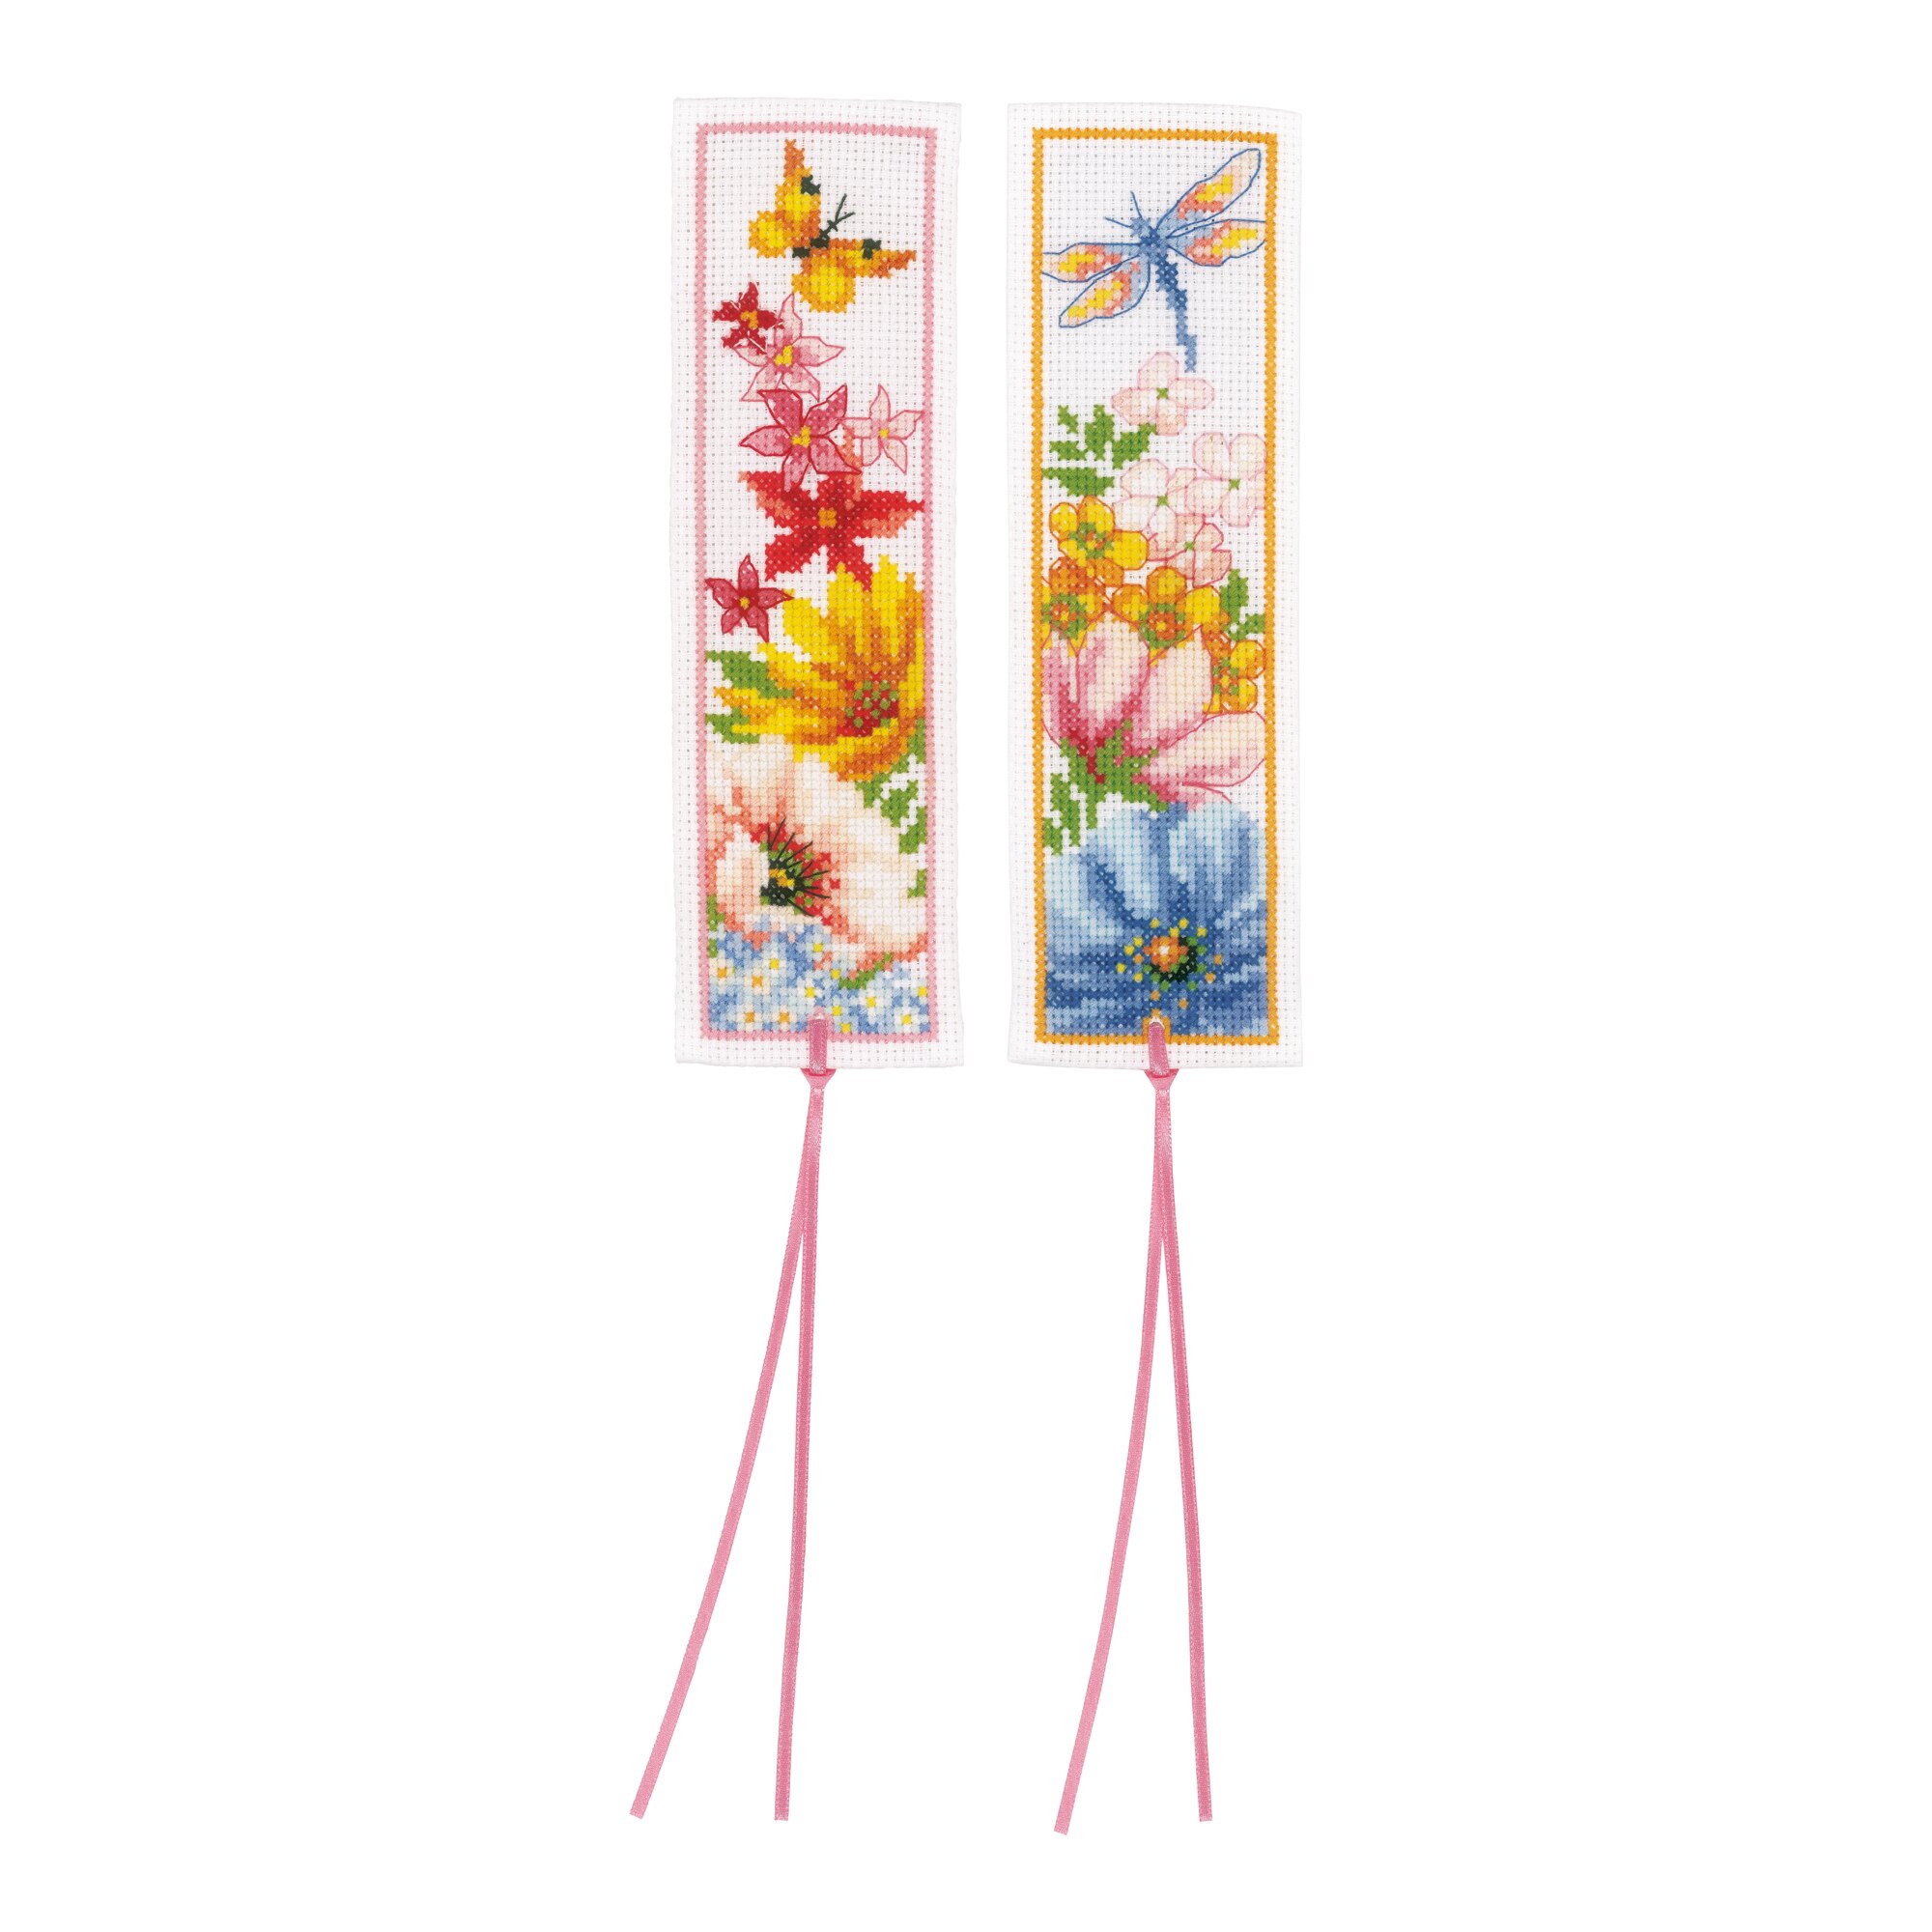 Image of Lesezeichen Stickpackung "Blumen", 2 Stück